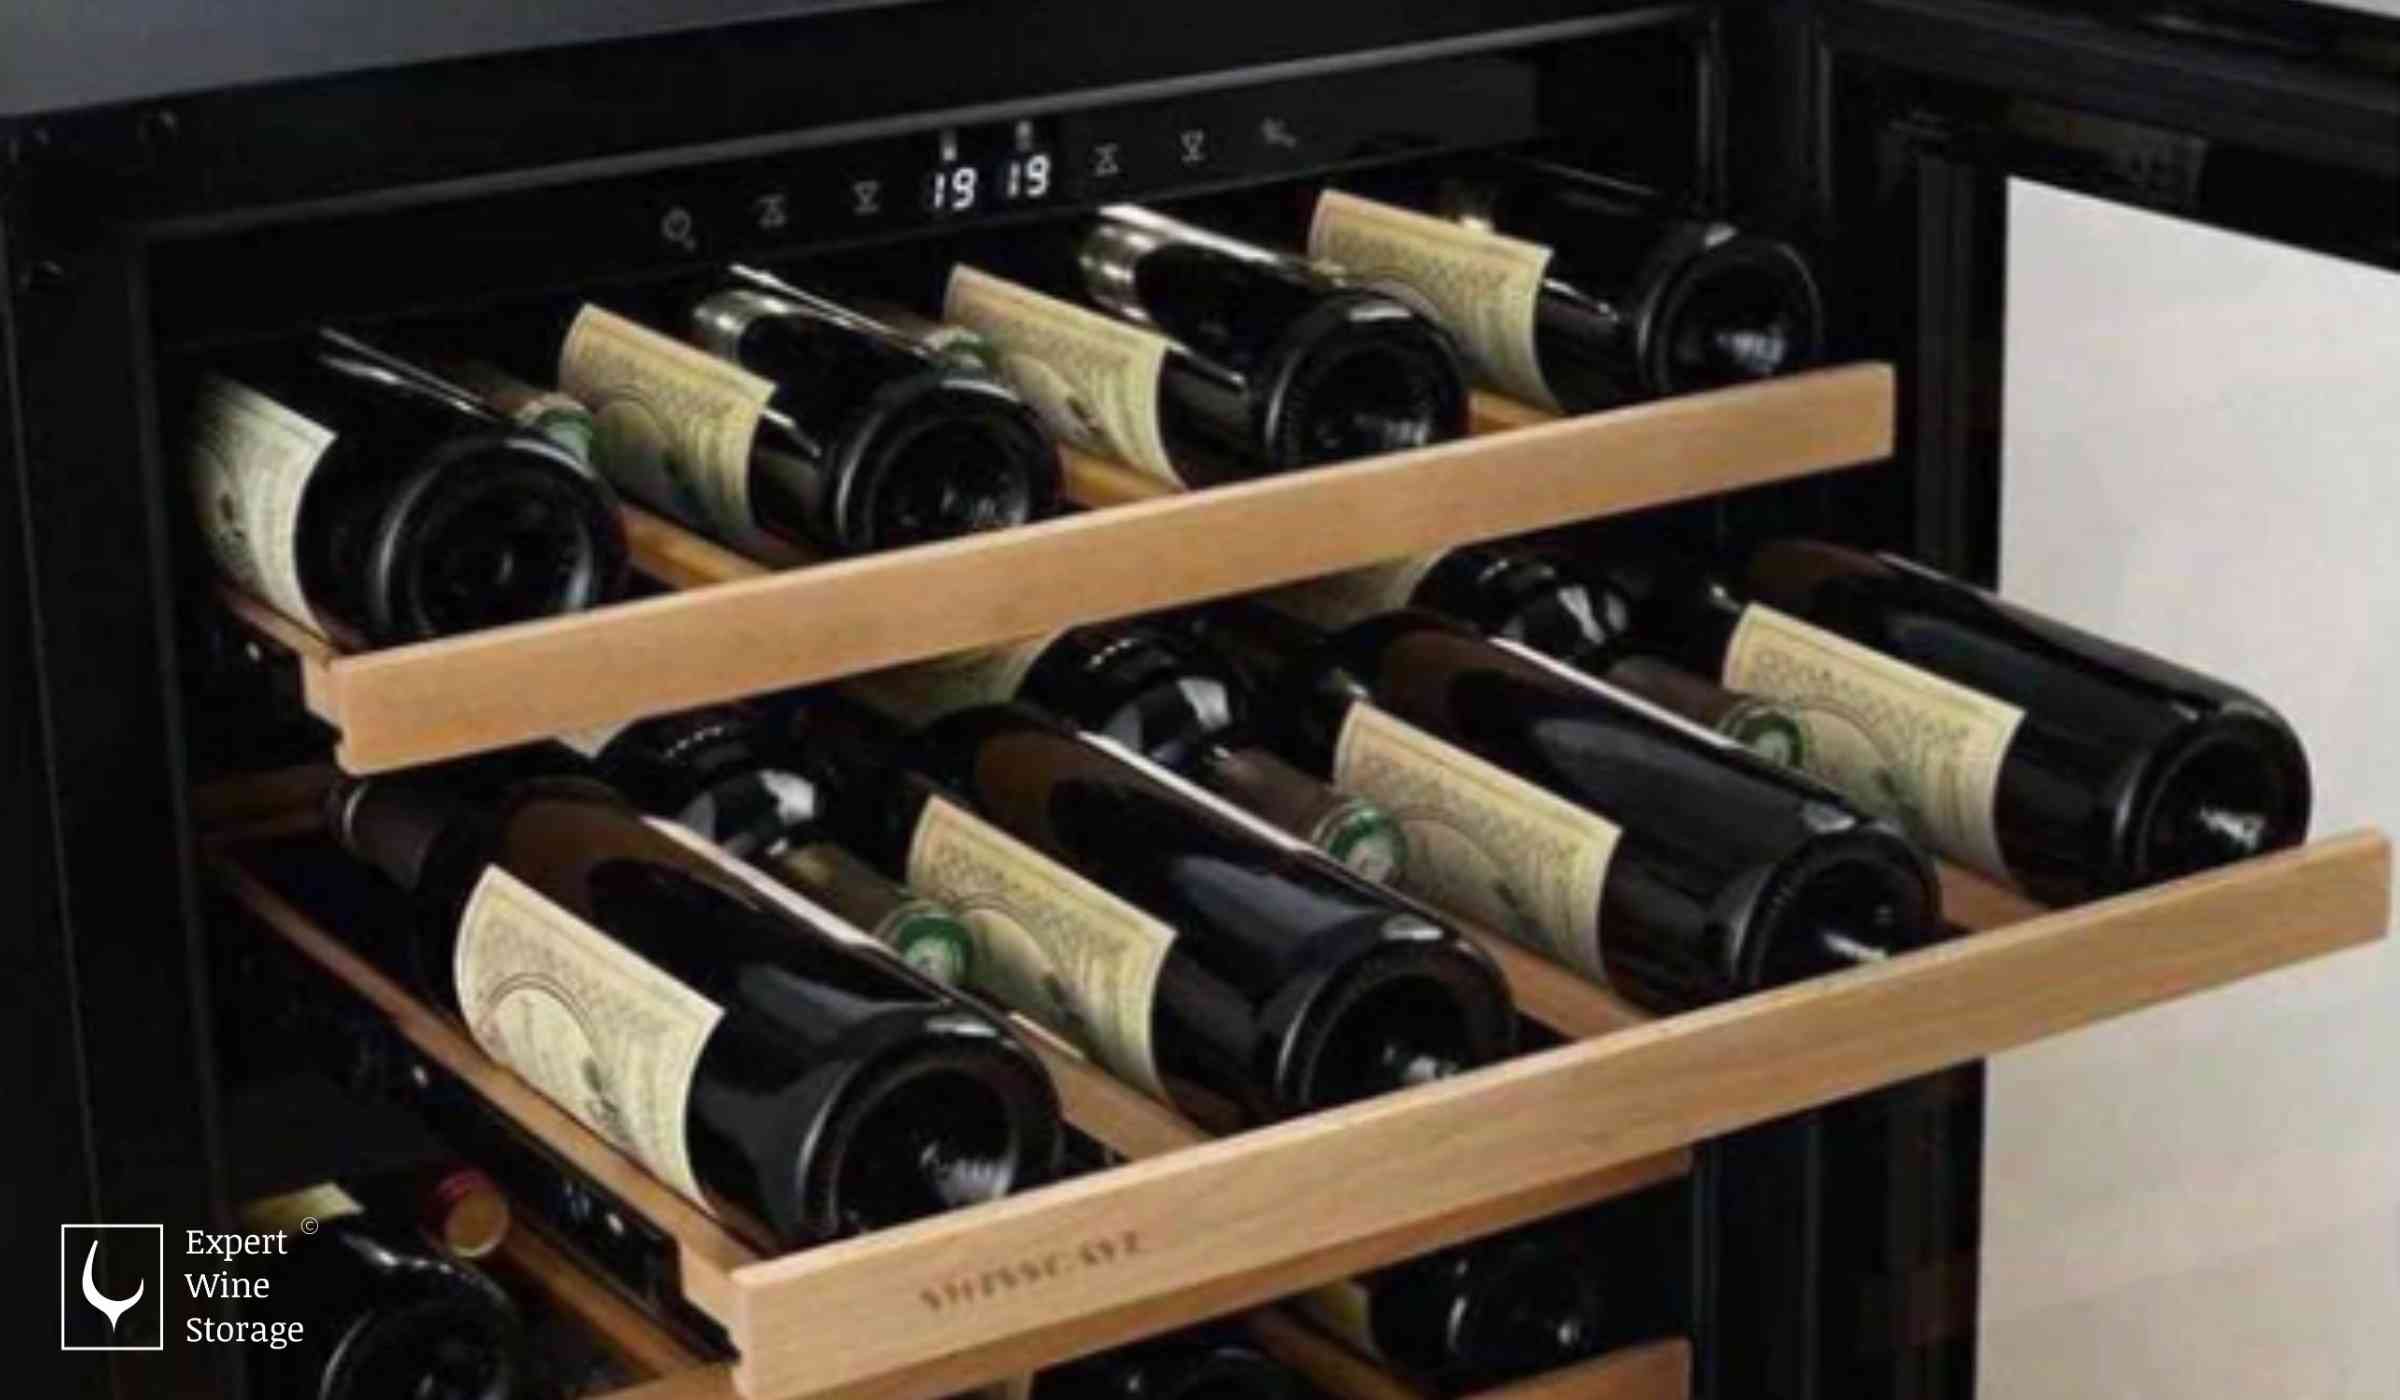 Wine Shelves in a Wine Fridge